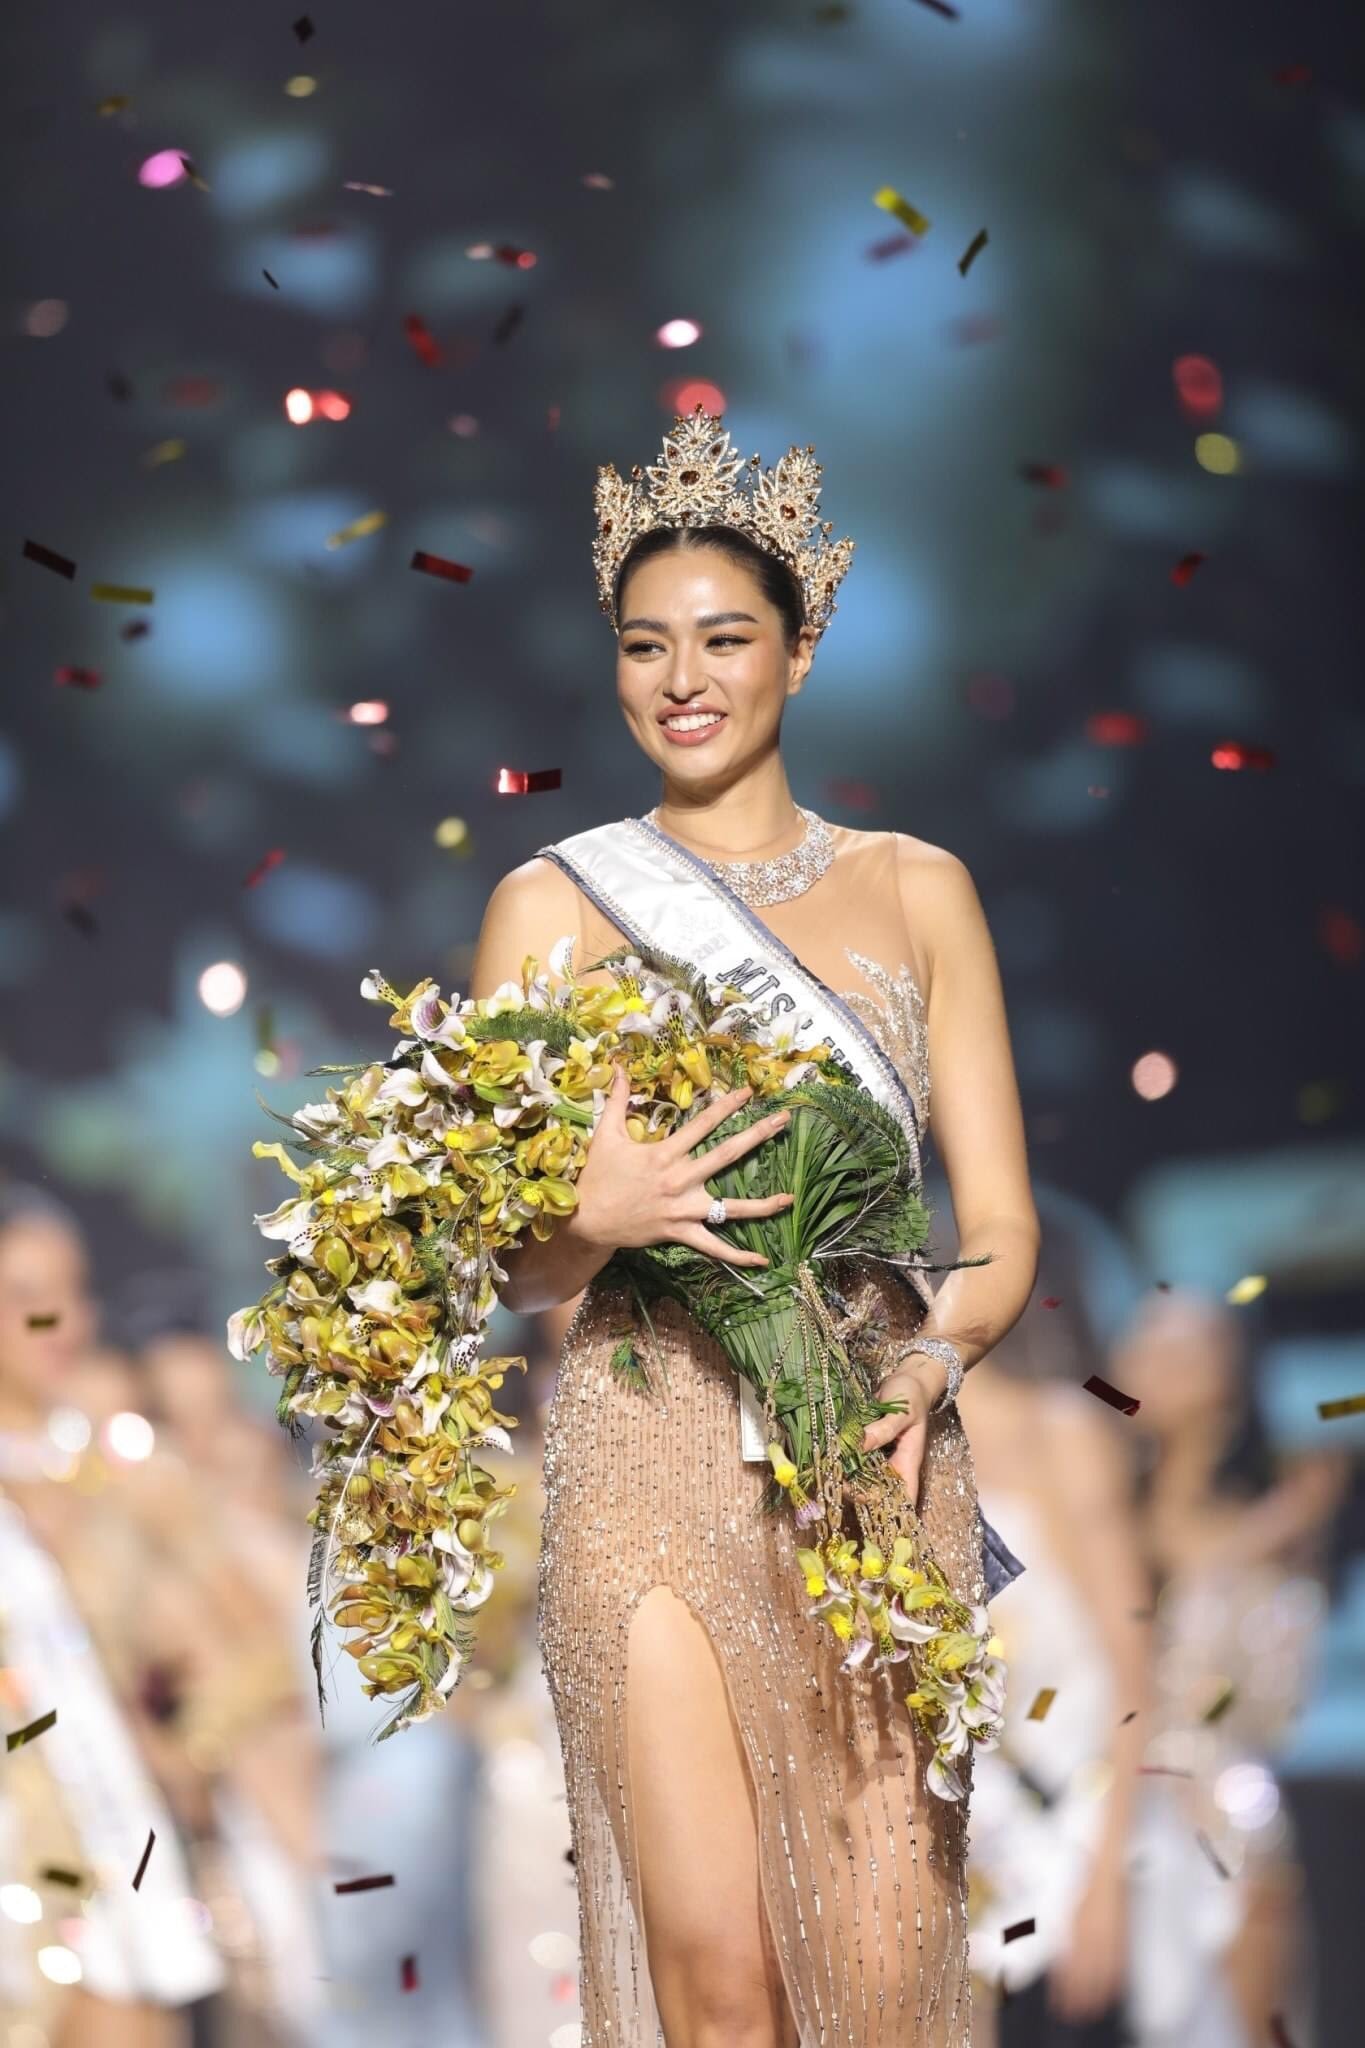 Anchilee Scott Kemmis vừa đăng quang Hoa hậu Hoàn vũ Thái Lan 2021 trong đêm chung kết diễn ra tối 24/10. Chiến thắng này không quá bất ngờ bởi từ đầu cô gái 22 tuổi đã là thí sinh được đông đảo công chúng ủng hộ.